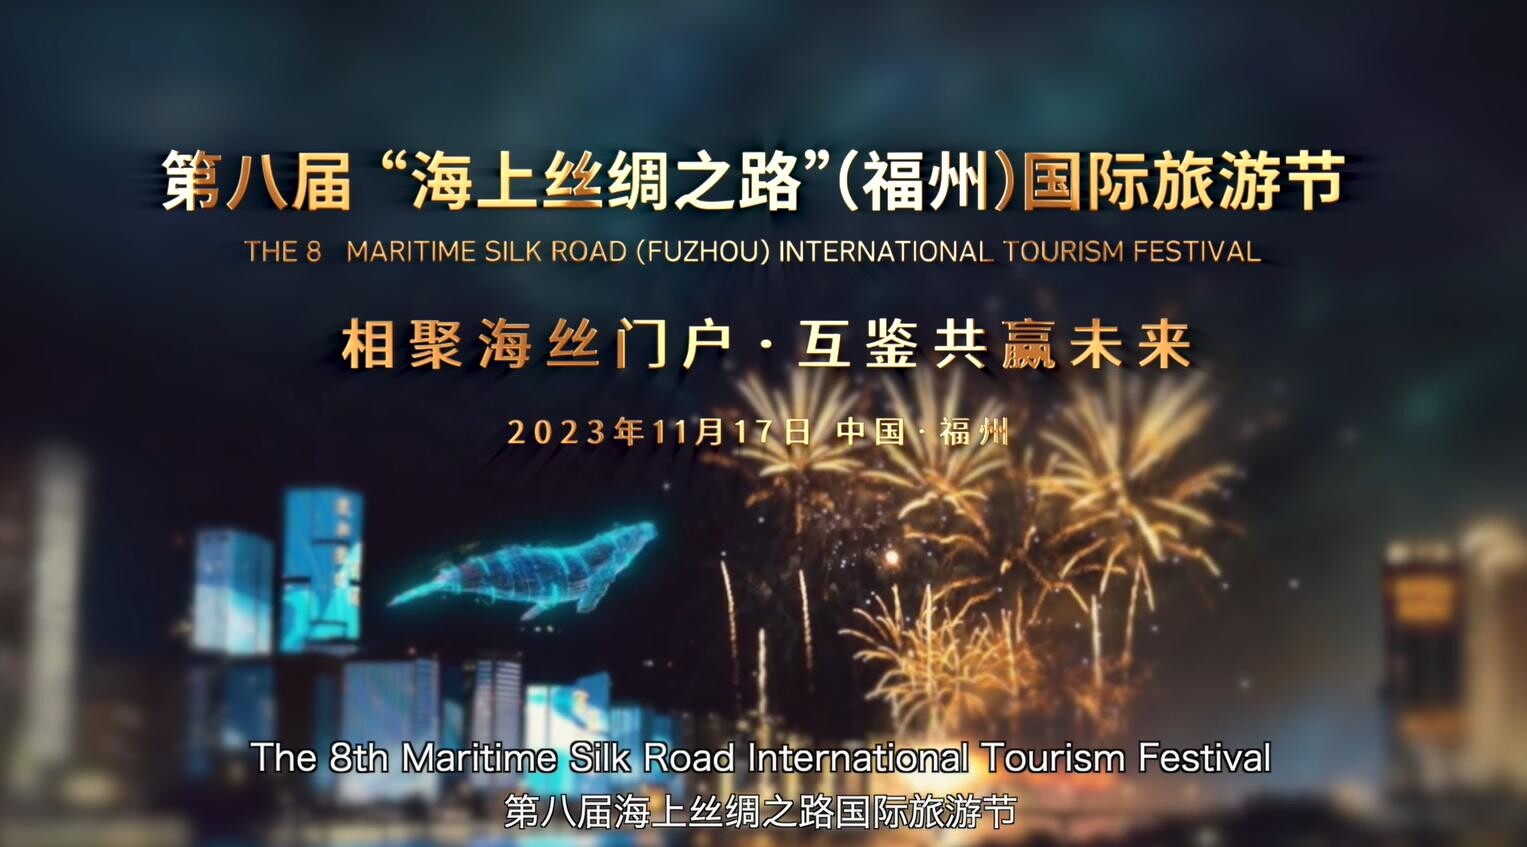 เทศกาลการท่องเที่ยวเส้นทางสายไหมทางทะเล (ฝูโจว) ครั้งที่ 8 ปล่อยวิดีโอโปรโมทงาน